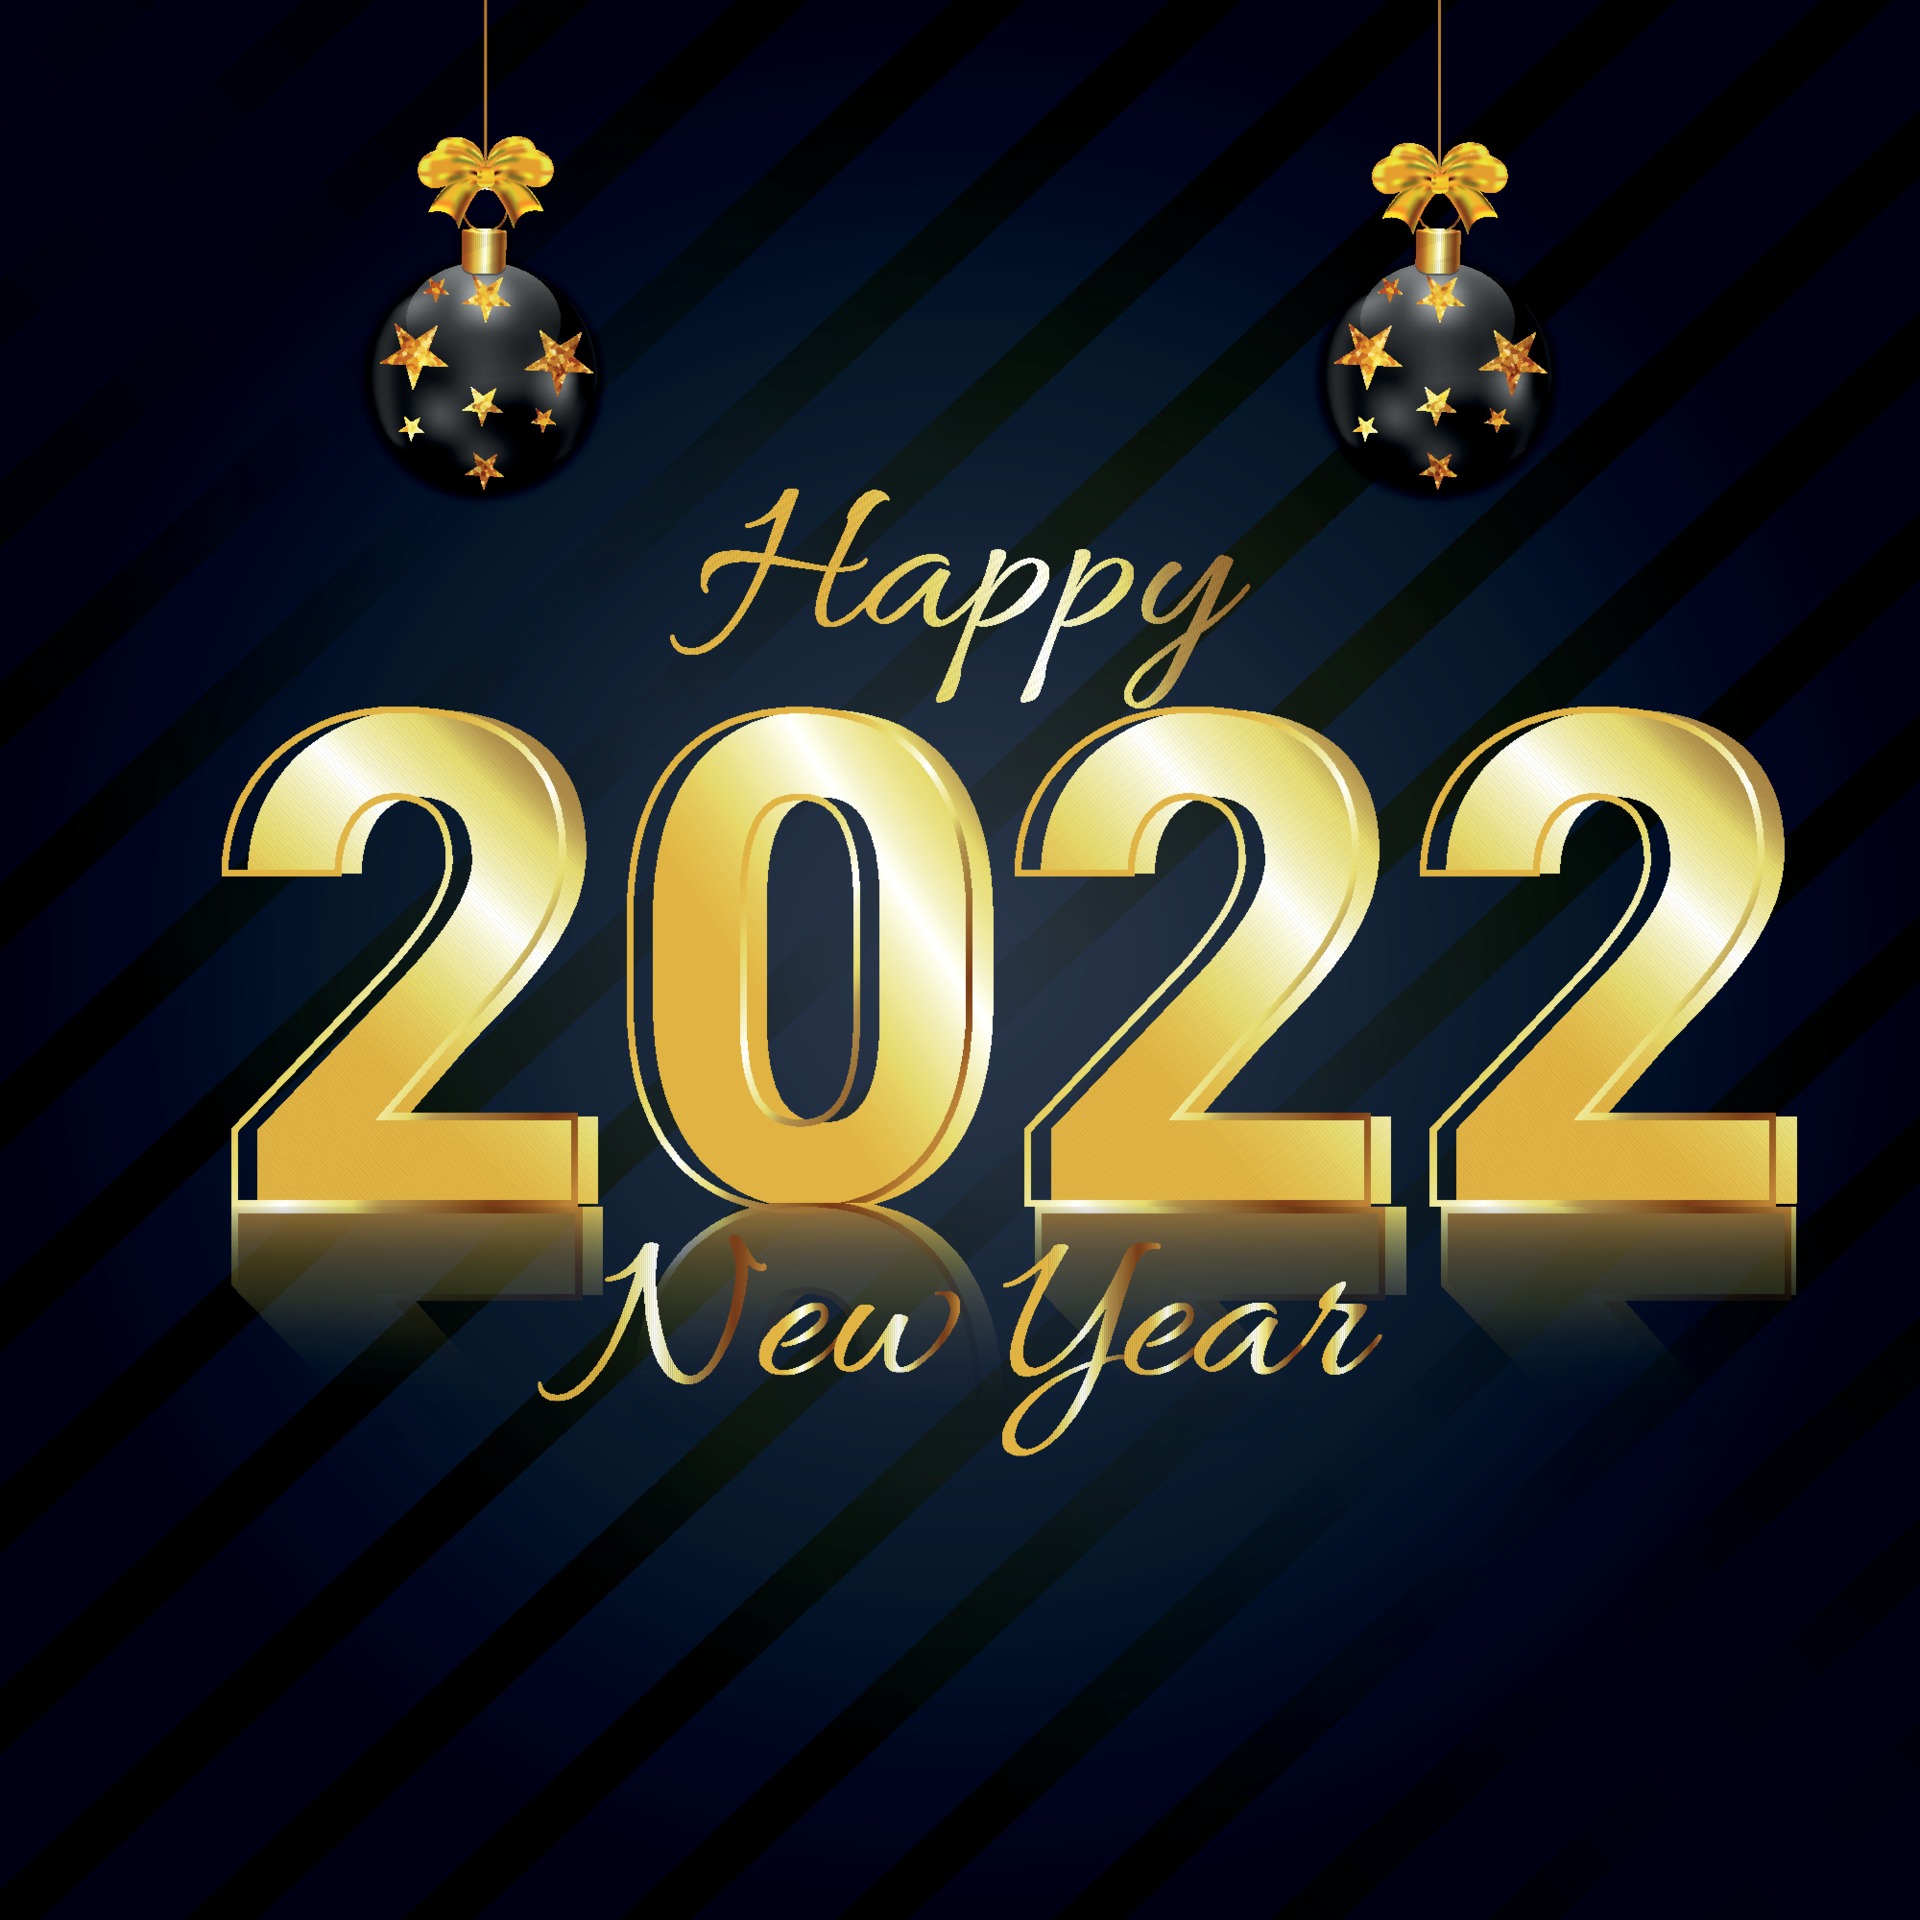 2022新年快樂圖 免費下載 | 天天瘋後製